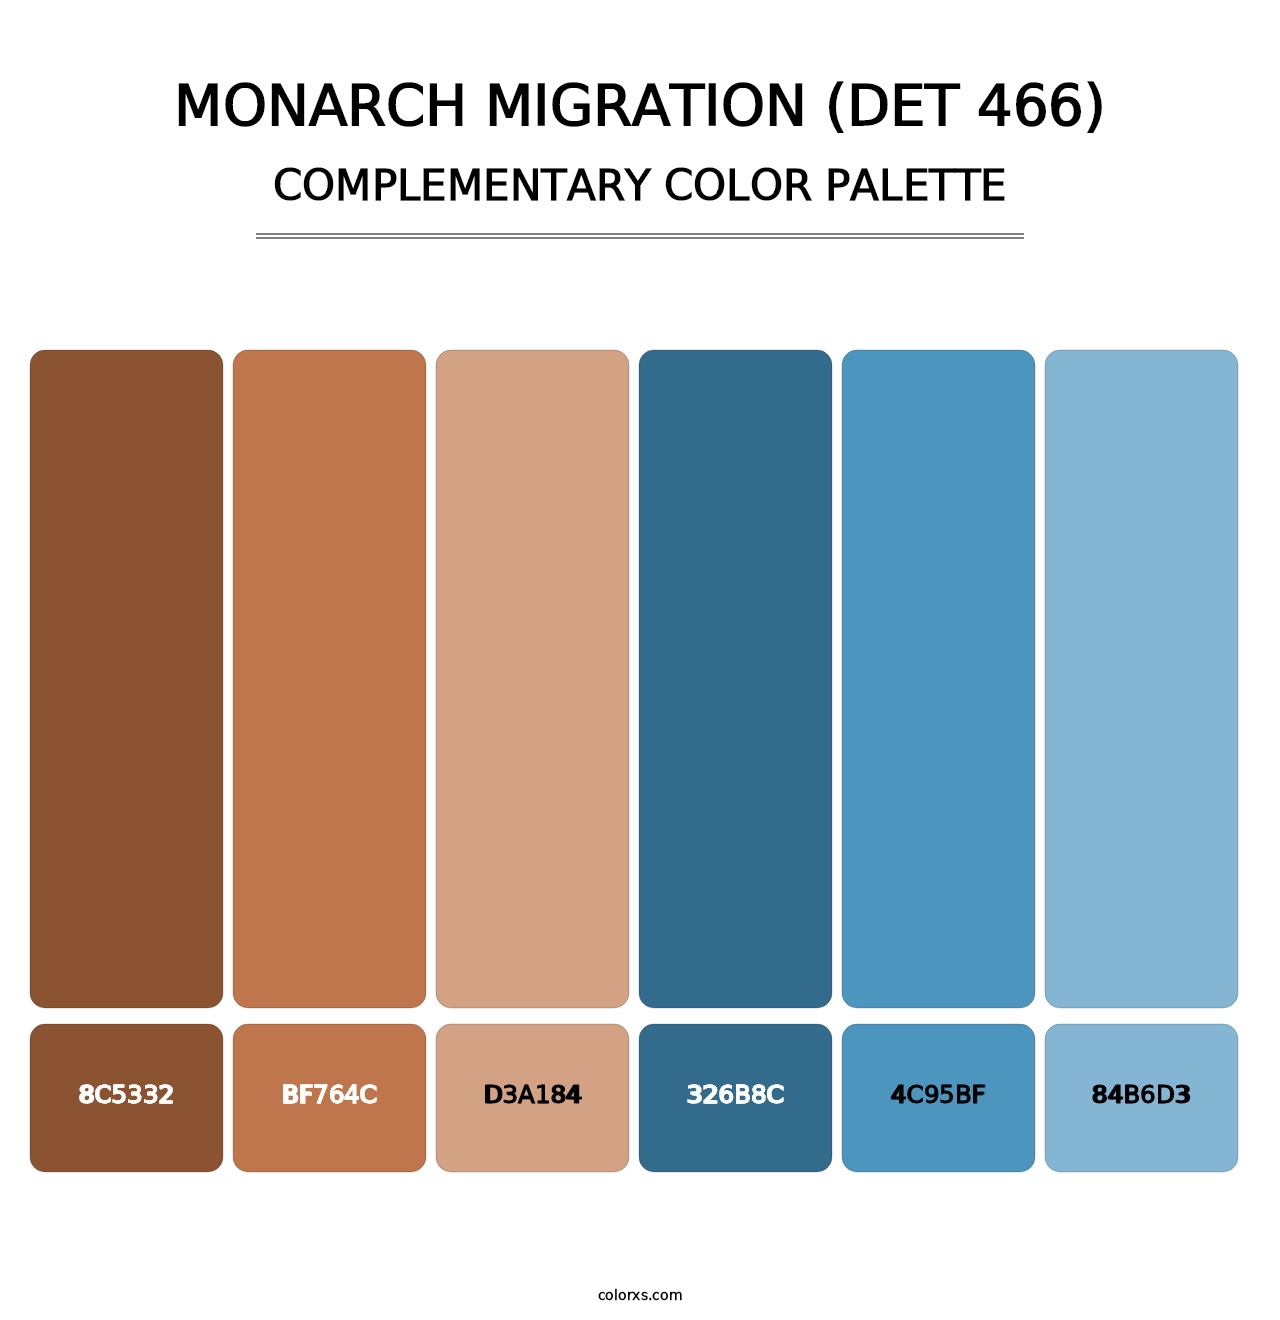 Monarch Migration (DET 466) - Complementary Color Palette